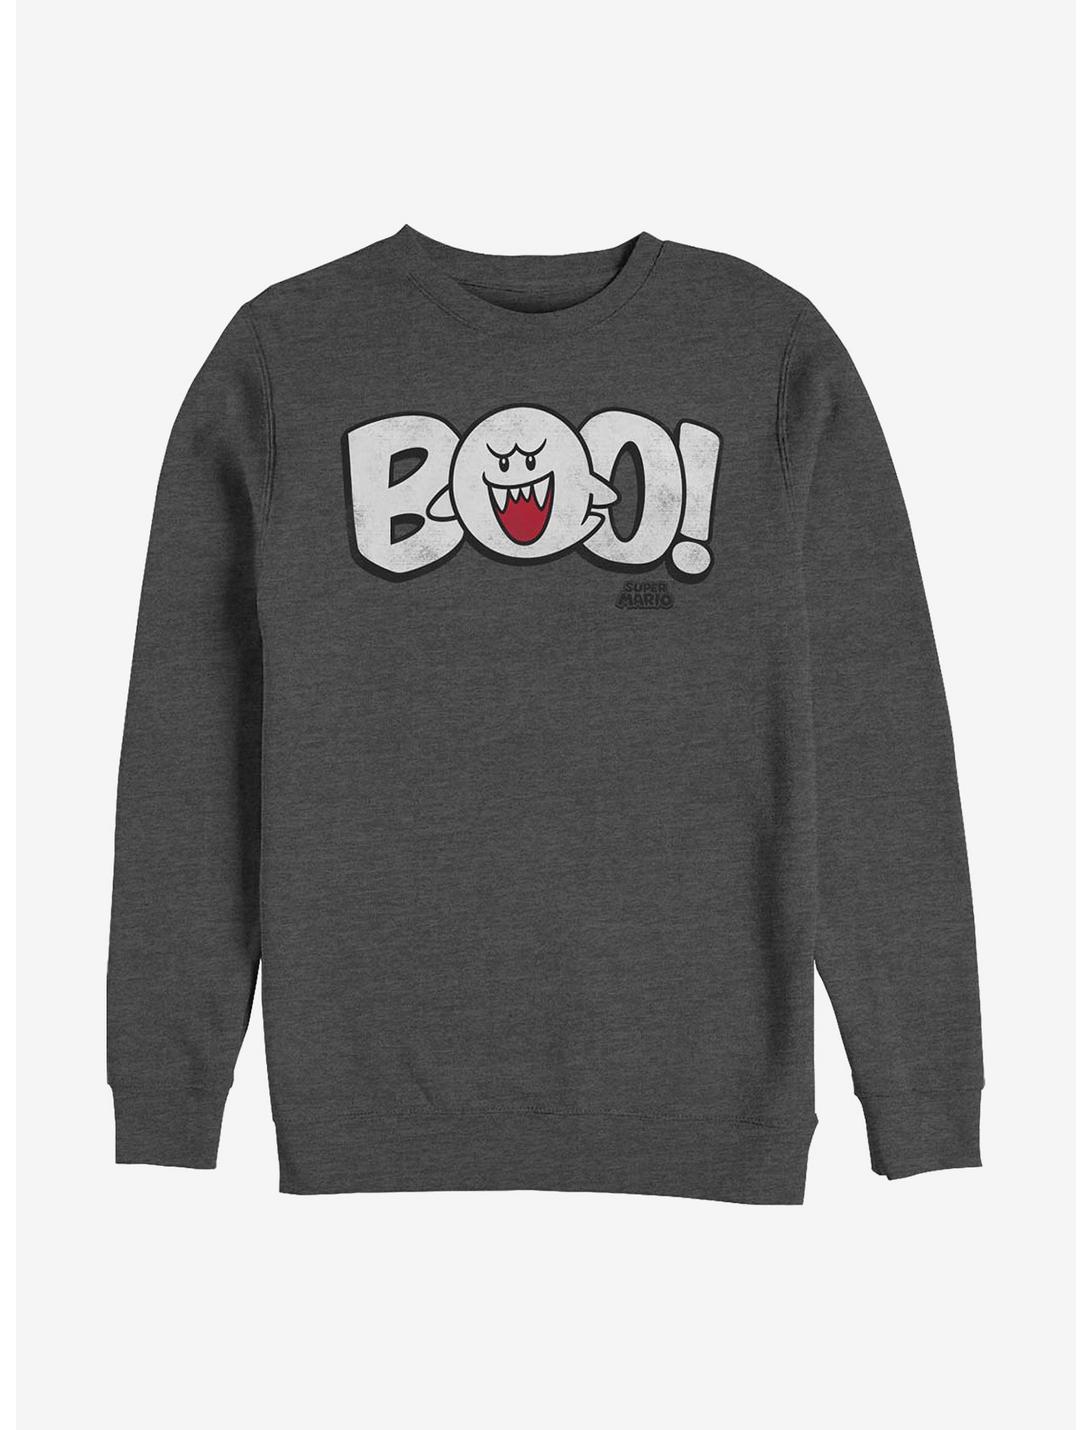 Nintendo Boo Sweatshirt, CHAR HTR, hi-res